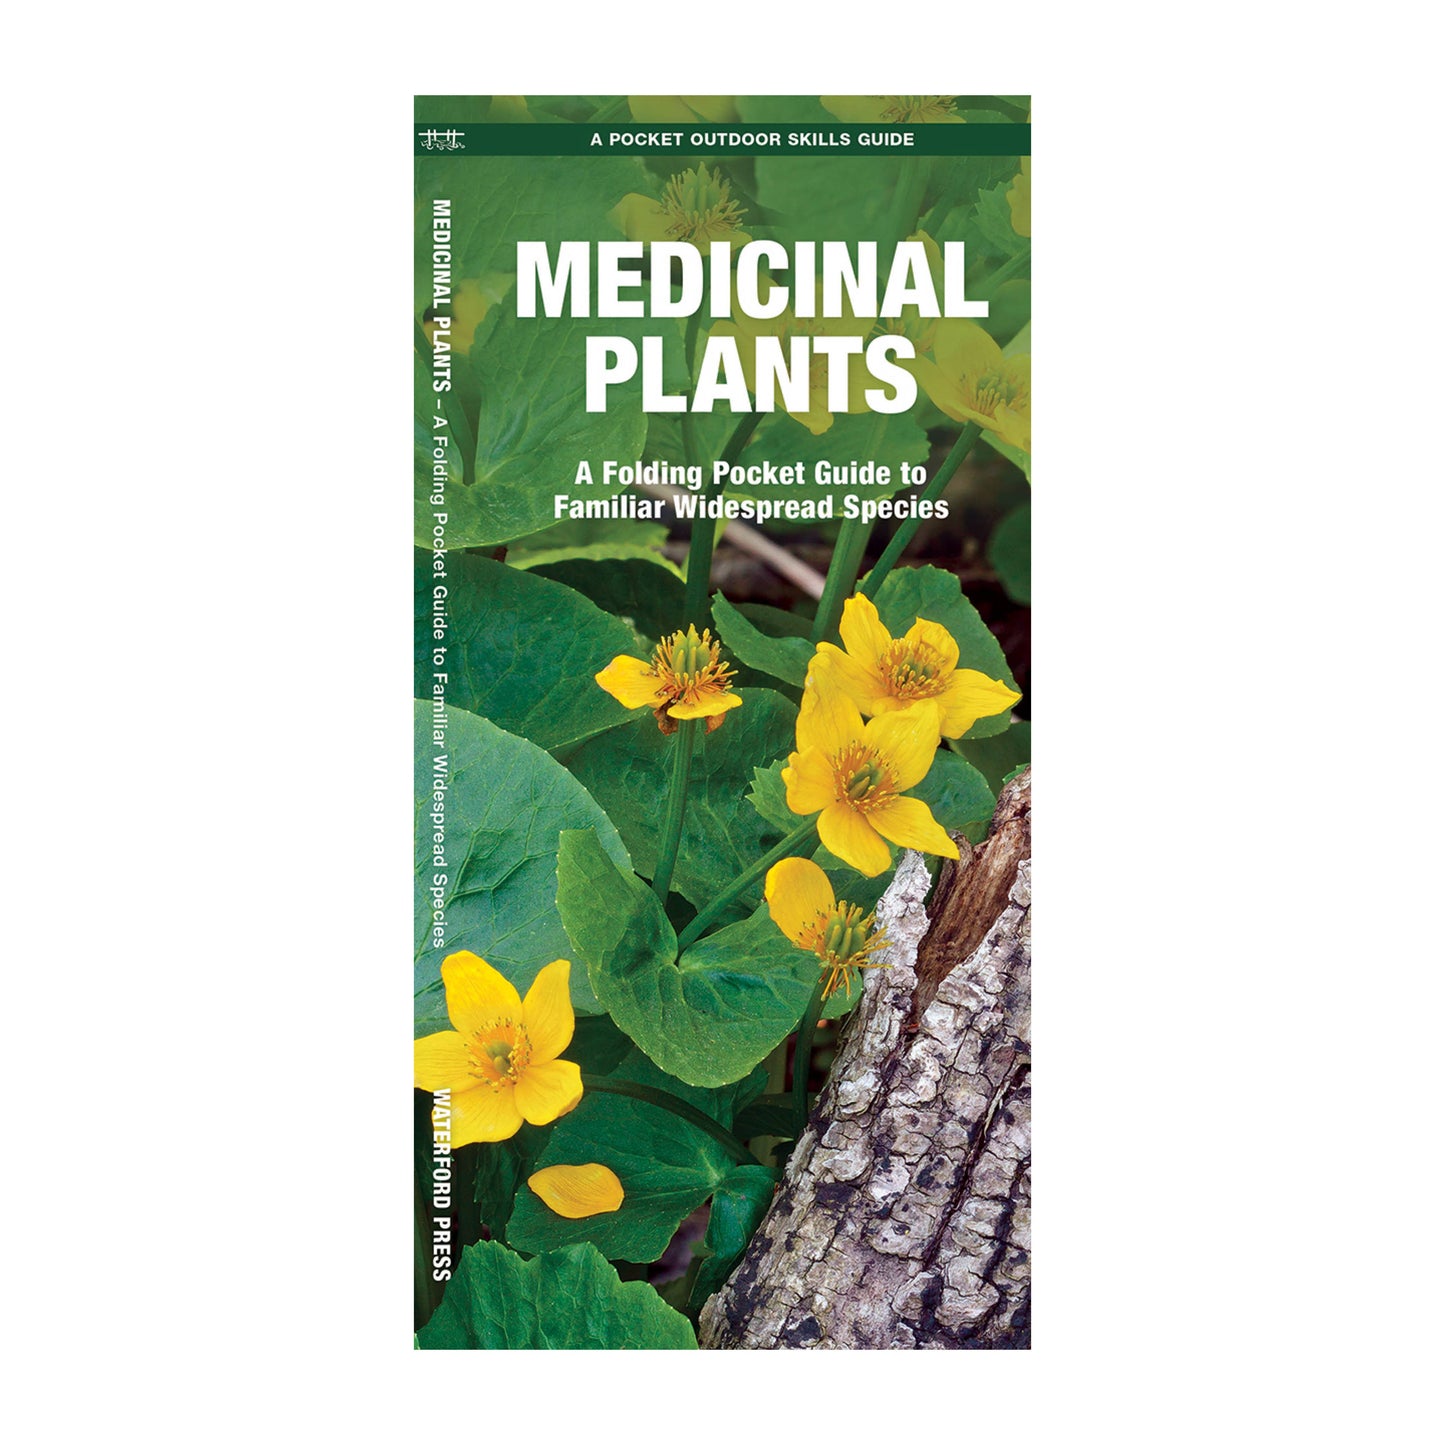 Medicinal Plants: Laminated Guide